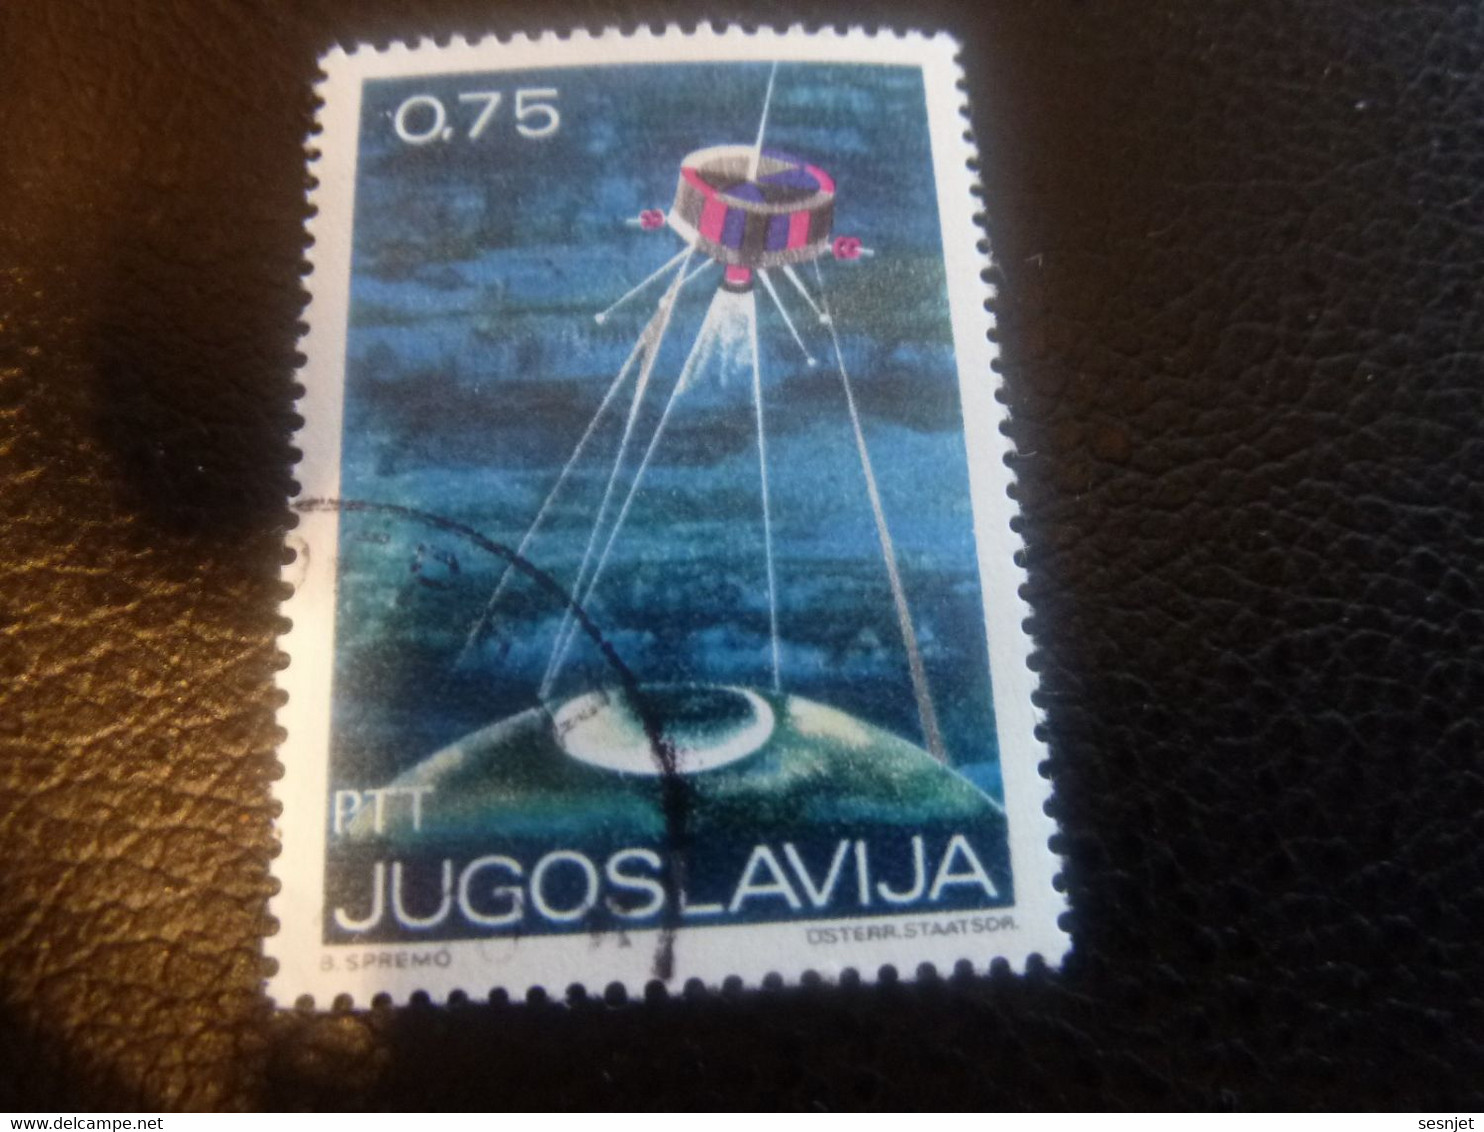 Ptt - Jugoslavija - Val 0.75 - Multicolore - Oblitéré - - Used Stamps